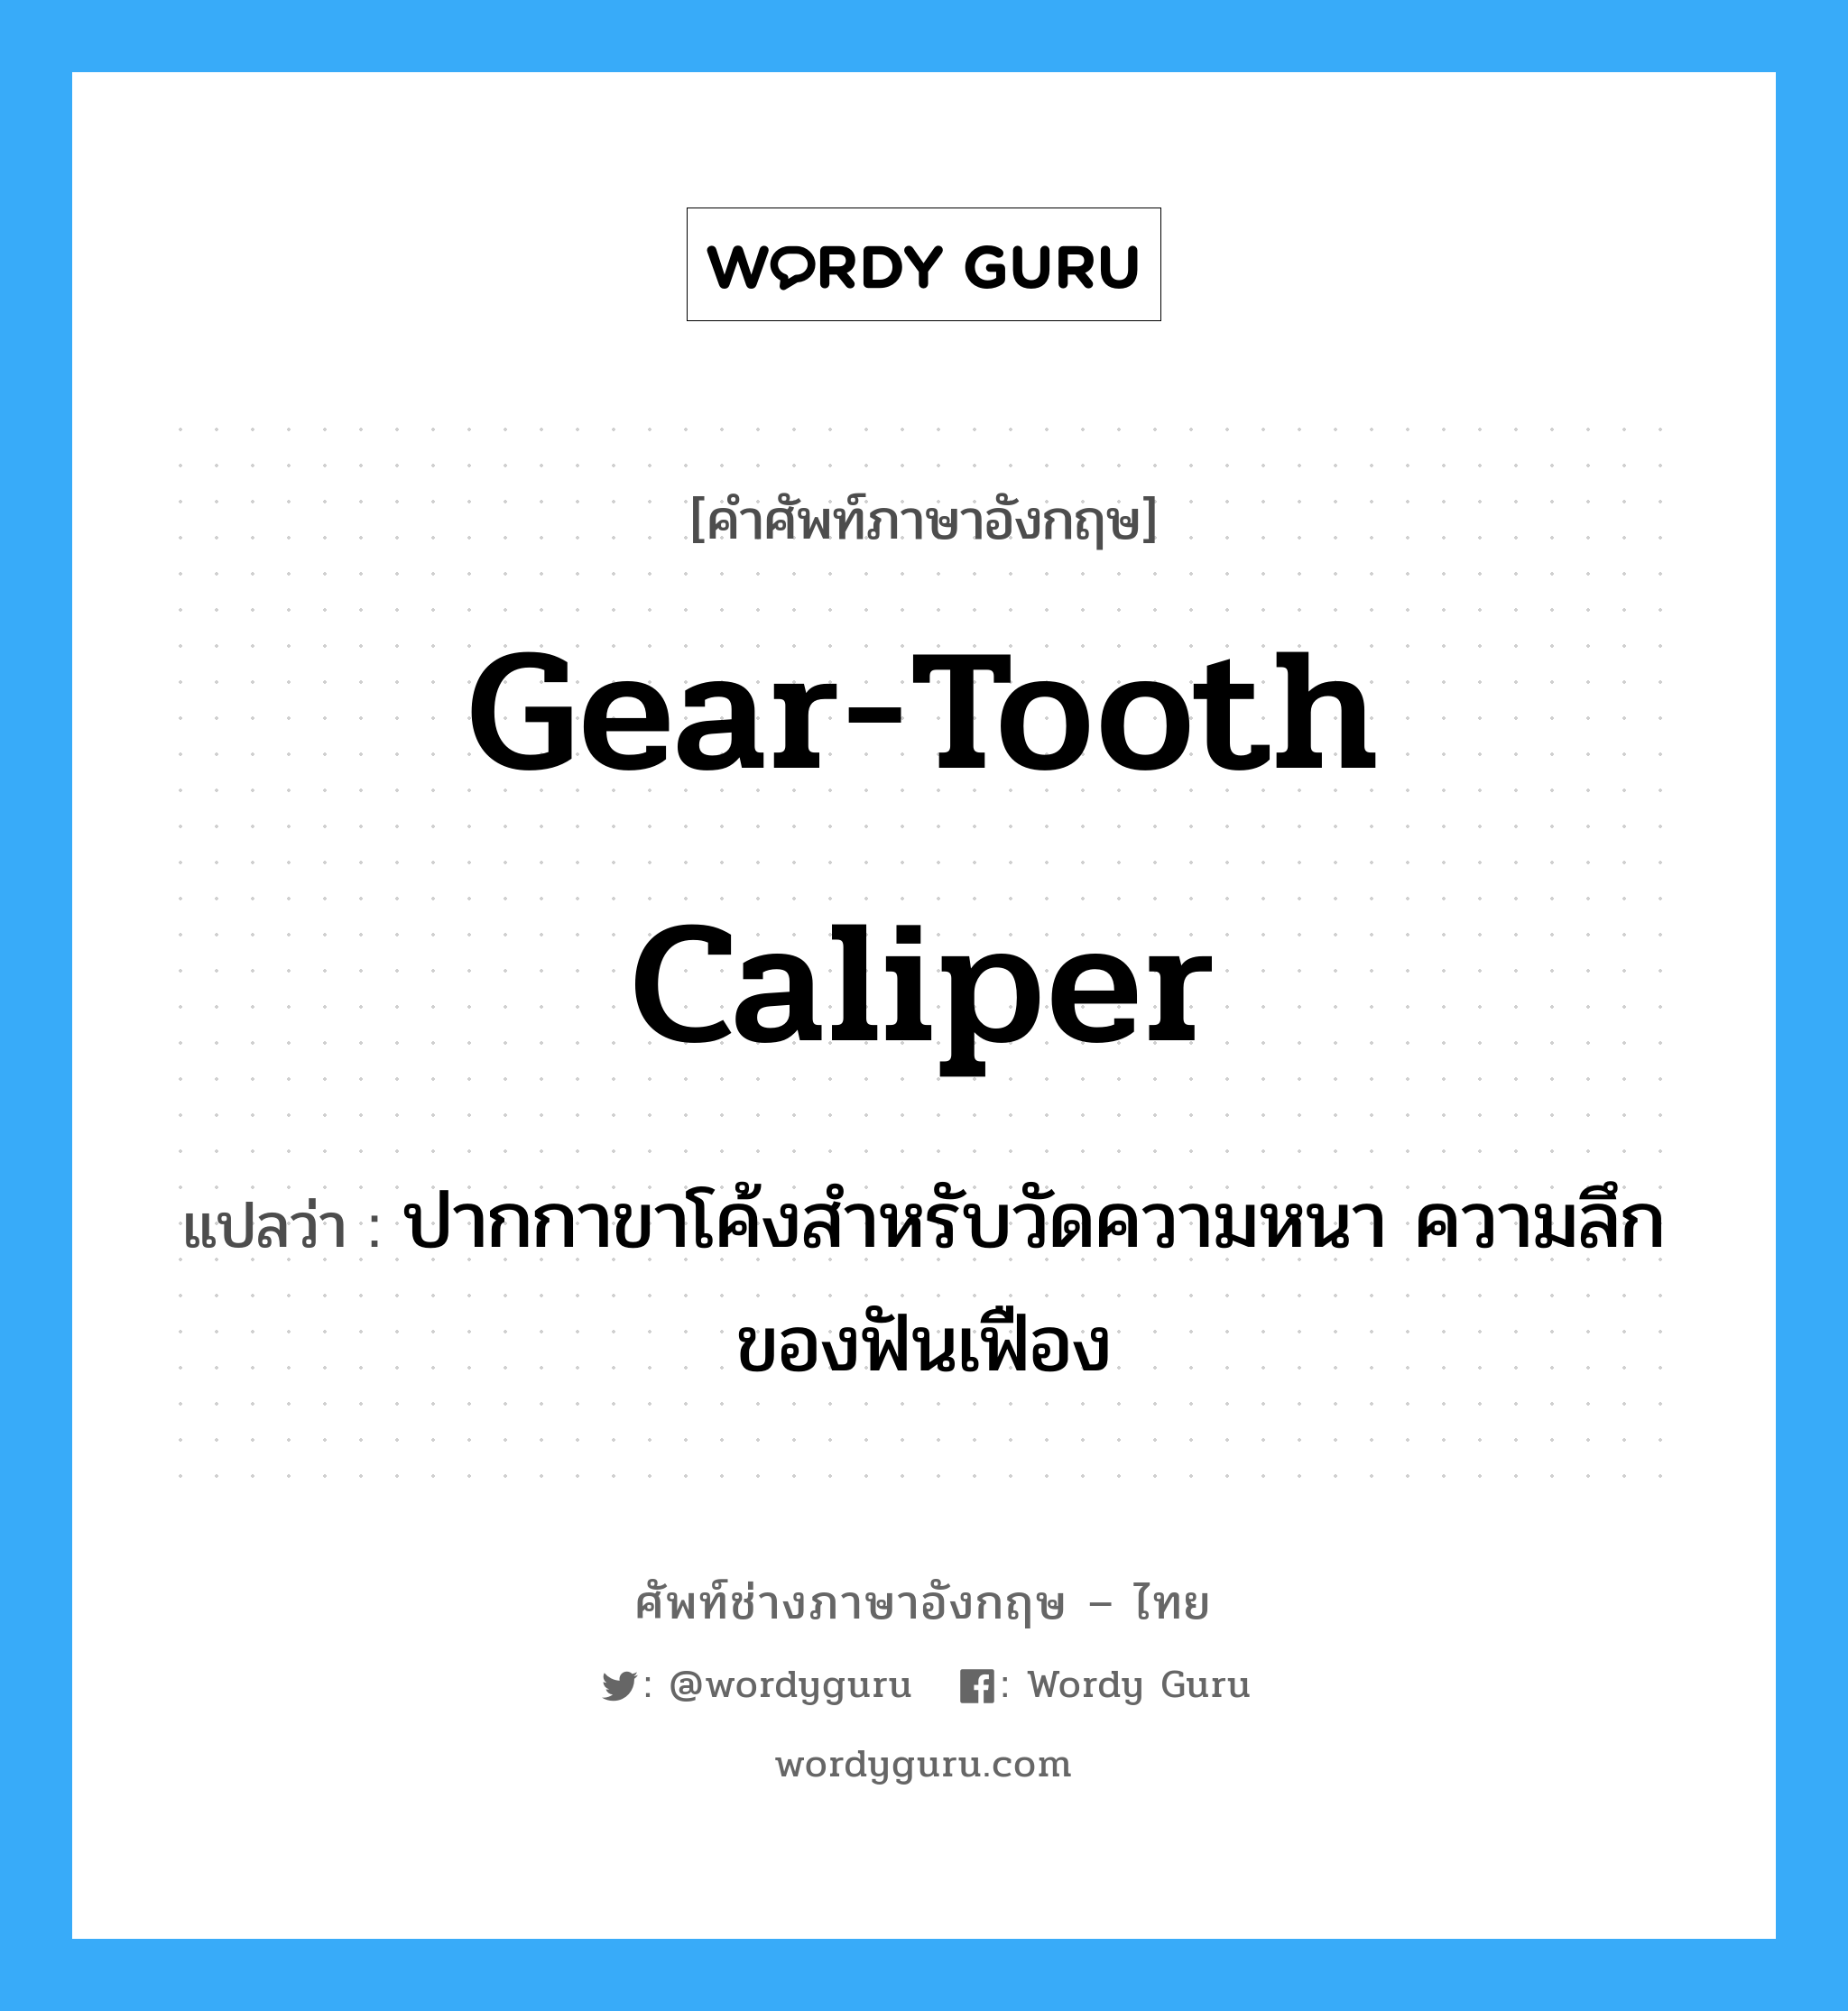 gear-tooth caliper แปลว่า?, คำศัพท์ช่างภาษาอังกฤษ - ไทย gear-tooth caliper คำศัพท์ภาษาอังกฤษ gear-tooth caliper แปลว่า ปากกาขาโค้งสำหรับวัดความหนา ความลึกของฟันเฟือง